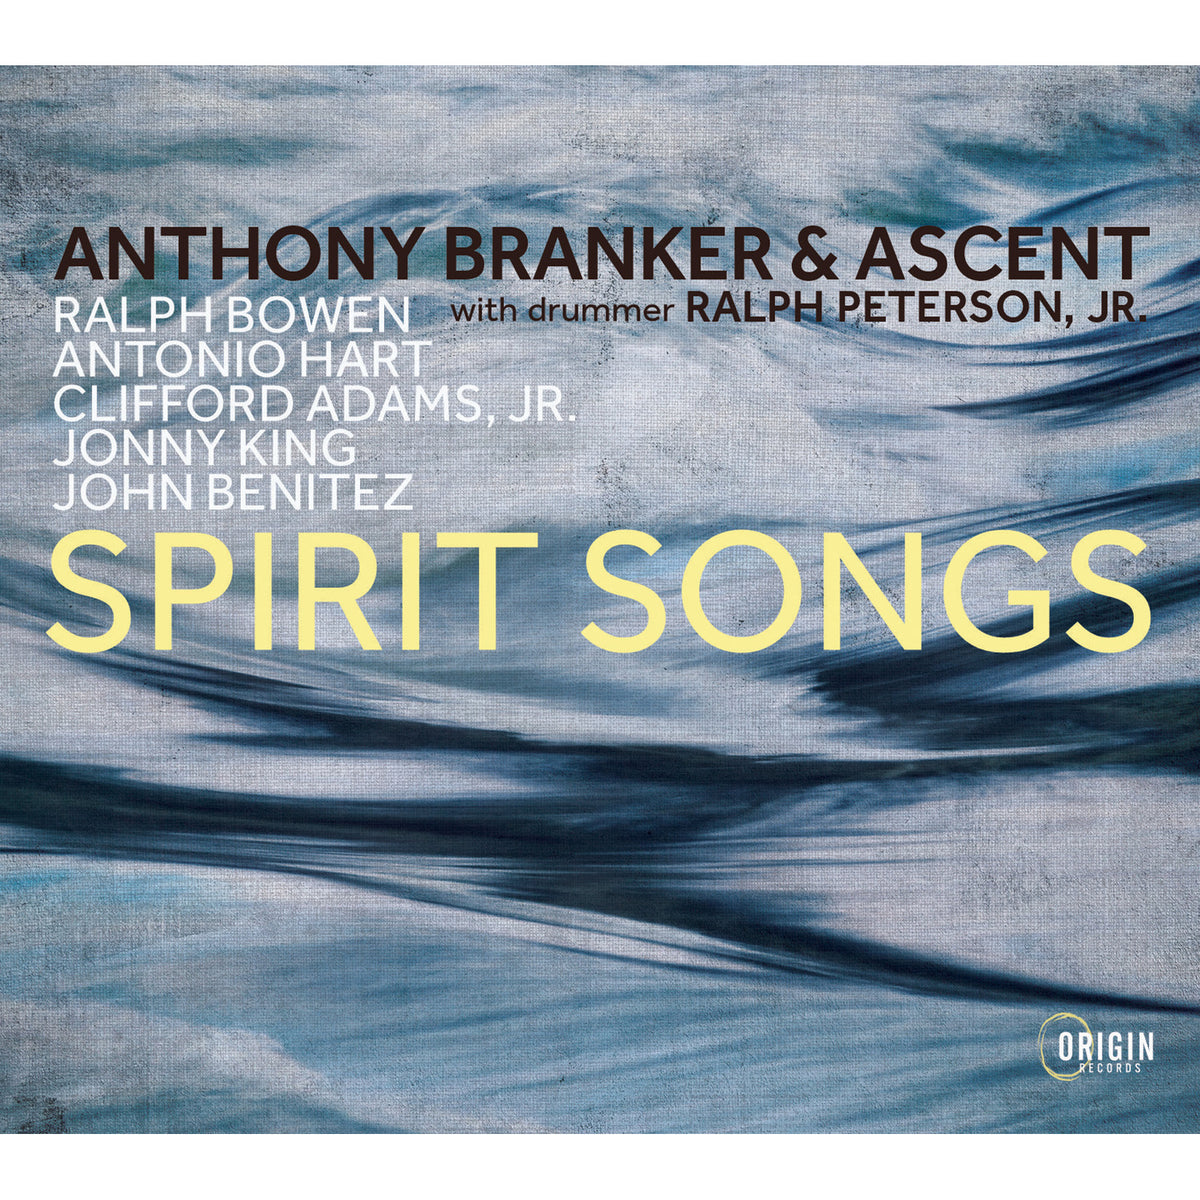 Spirit Songs - Anthony Branker & Ascent - ORIGIN82876